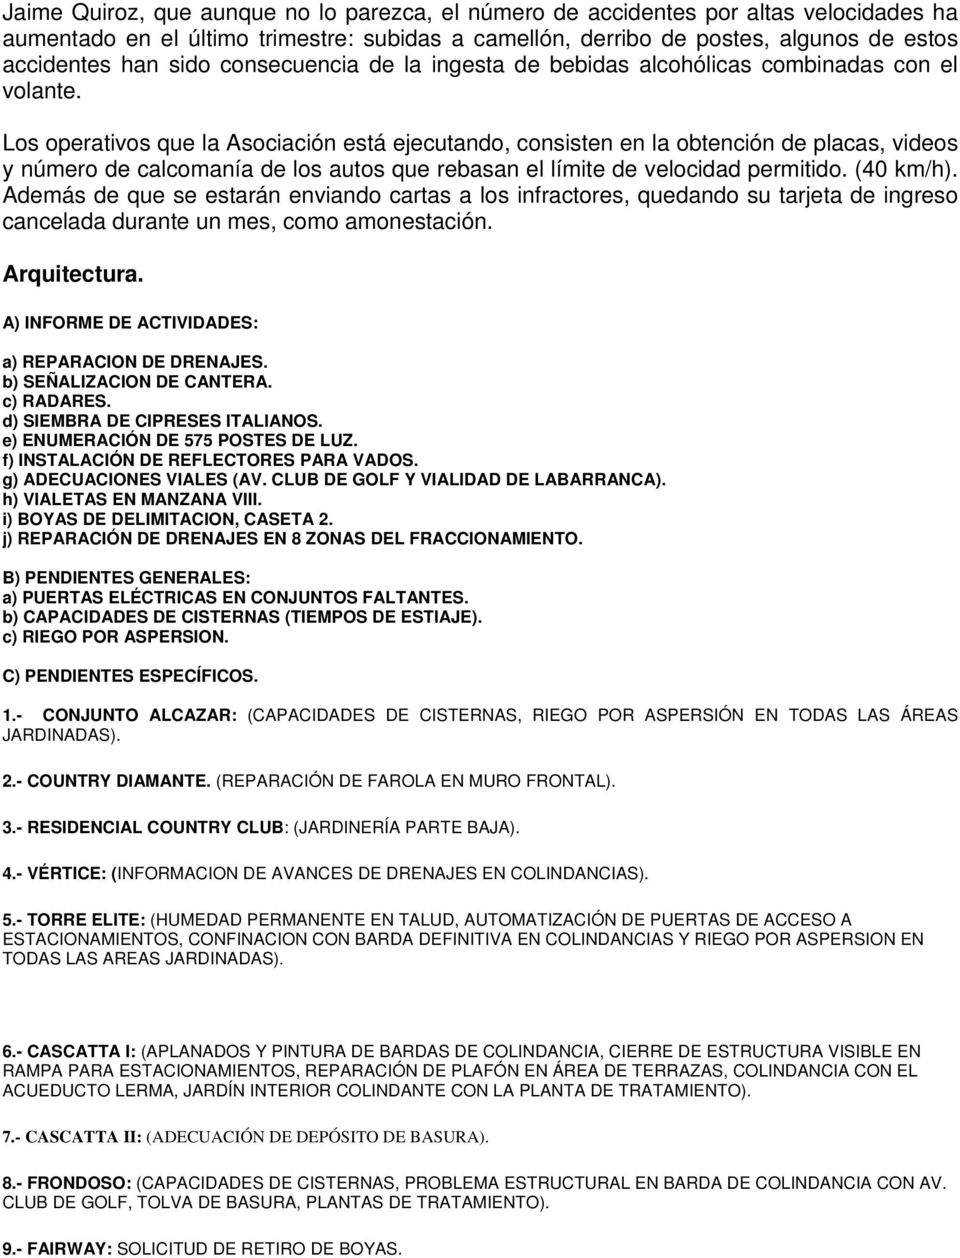 ASOCIACIÓN DE COLONOS LOMAS COUNTRY CLUB, A. C. MINUTA DE REUNIÓN CON  CONJUNTOS INTERNOS. - PDF Free Download